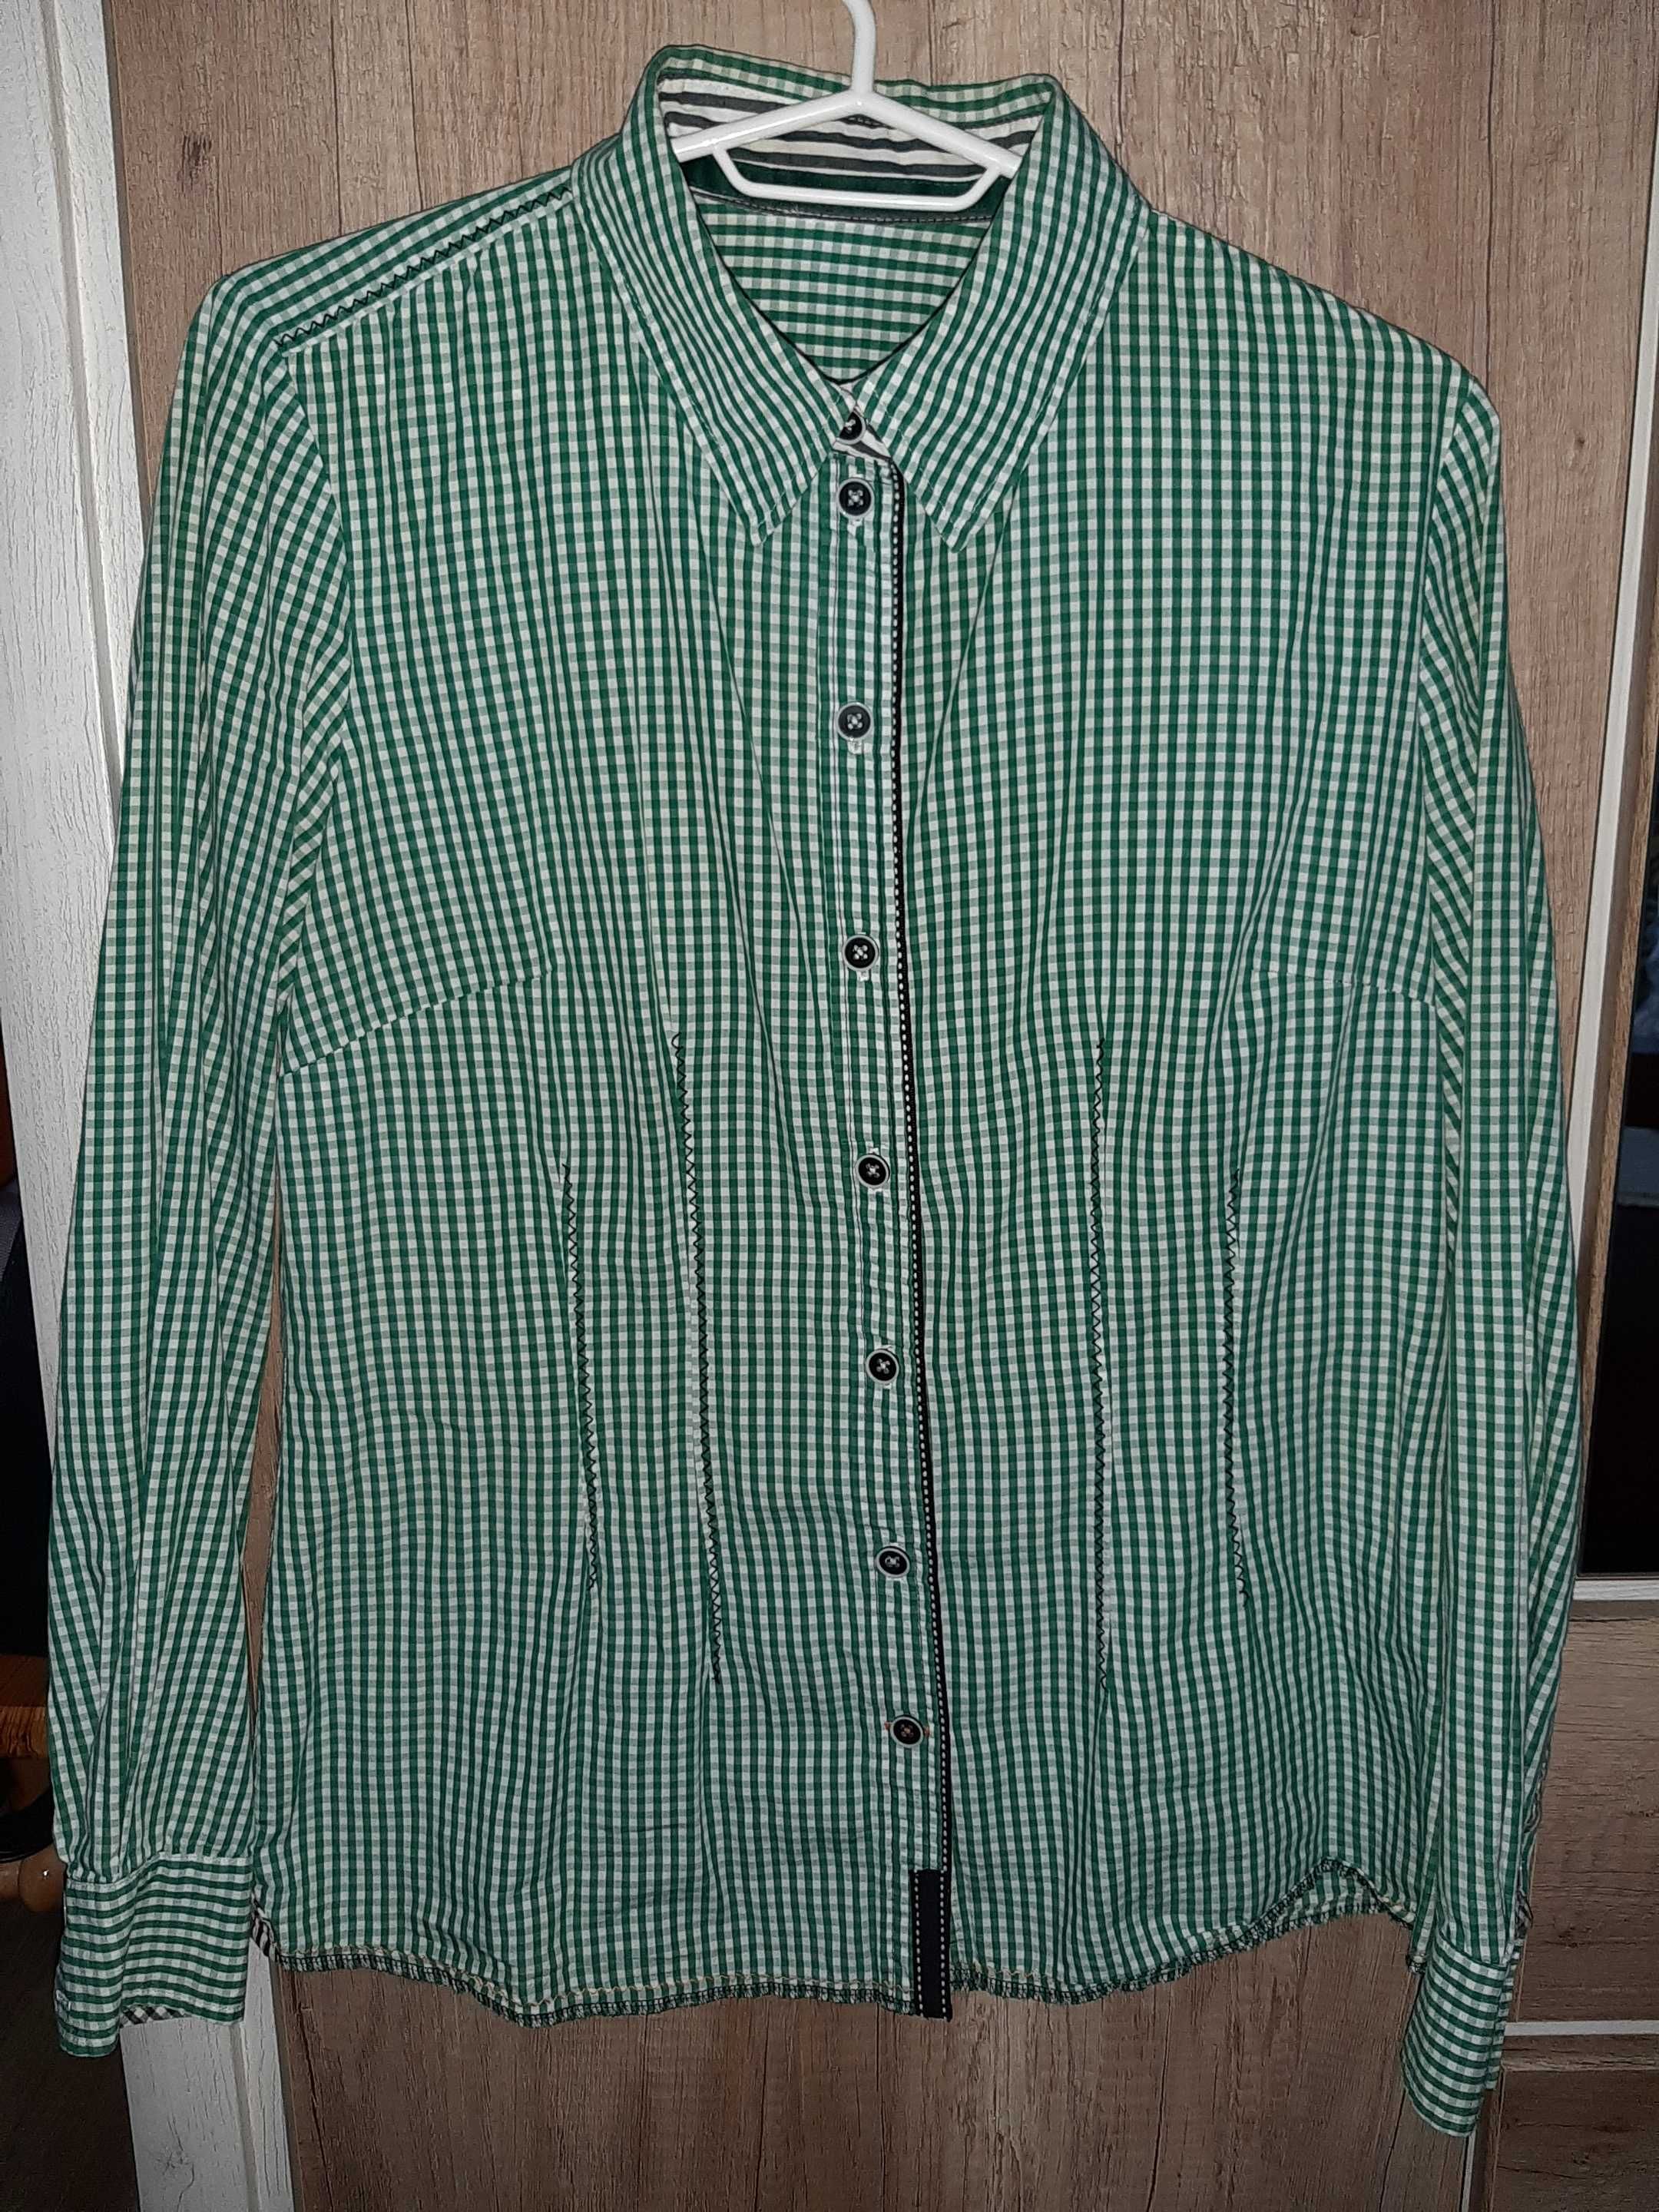 Женские блуза,рубашка,футболка р.46-48